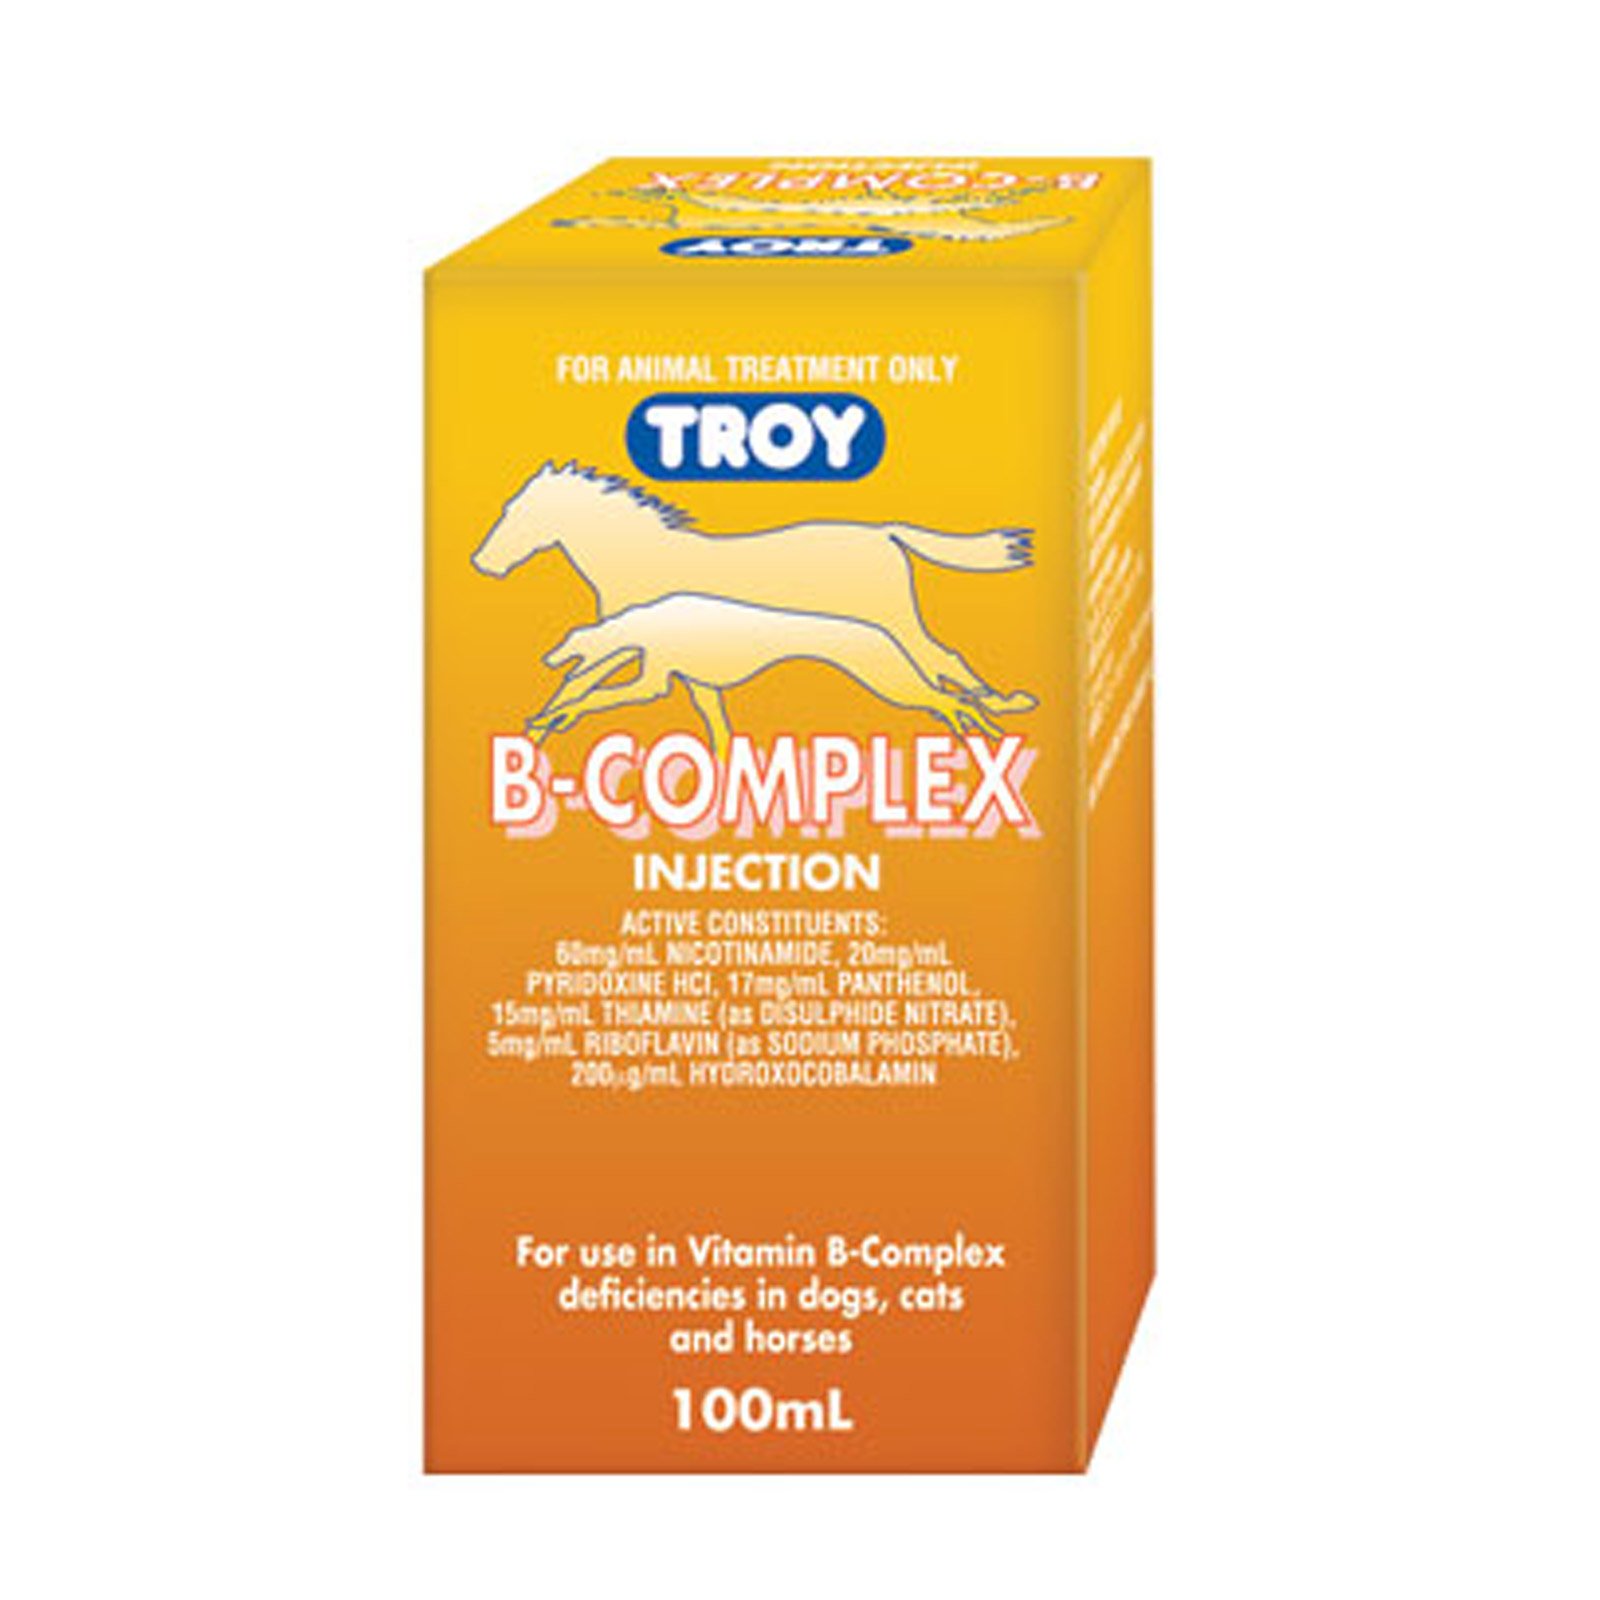 Troy B-Complex